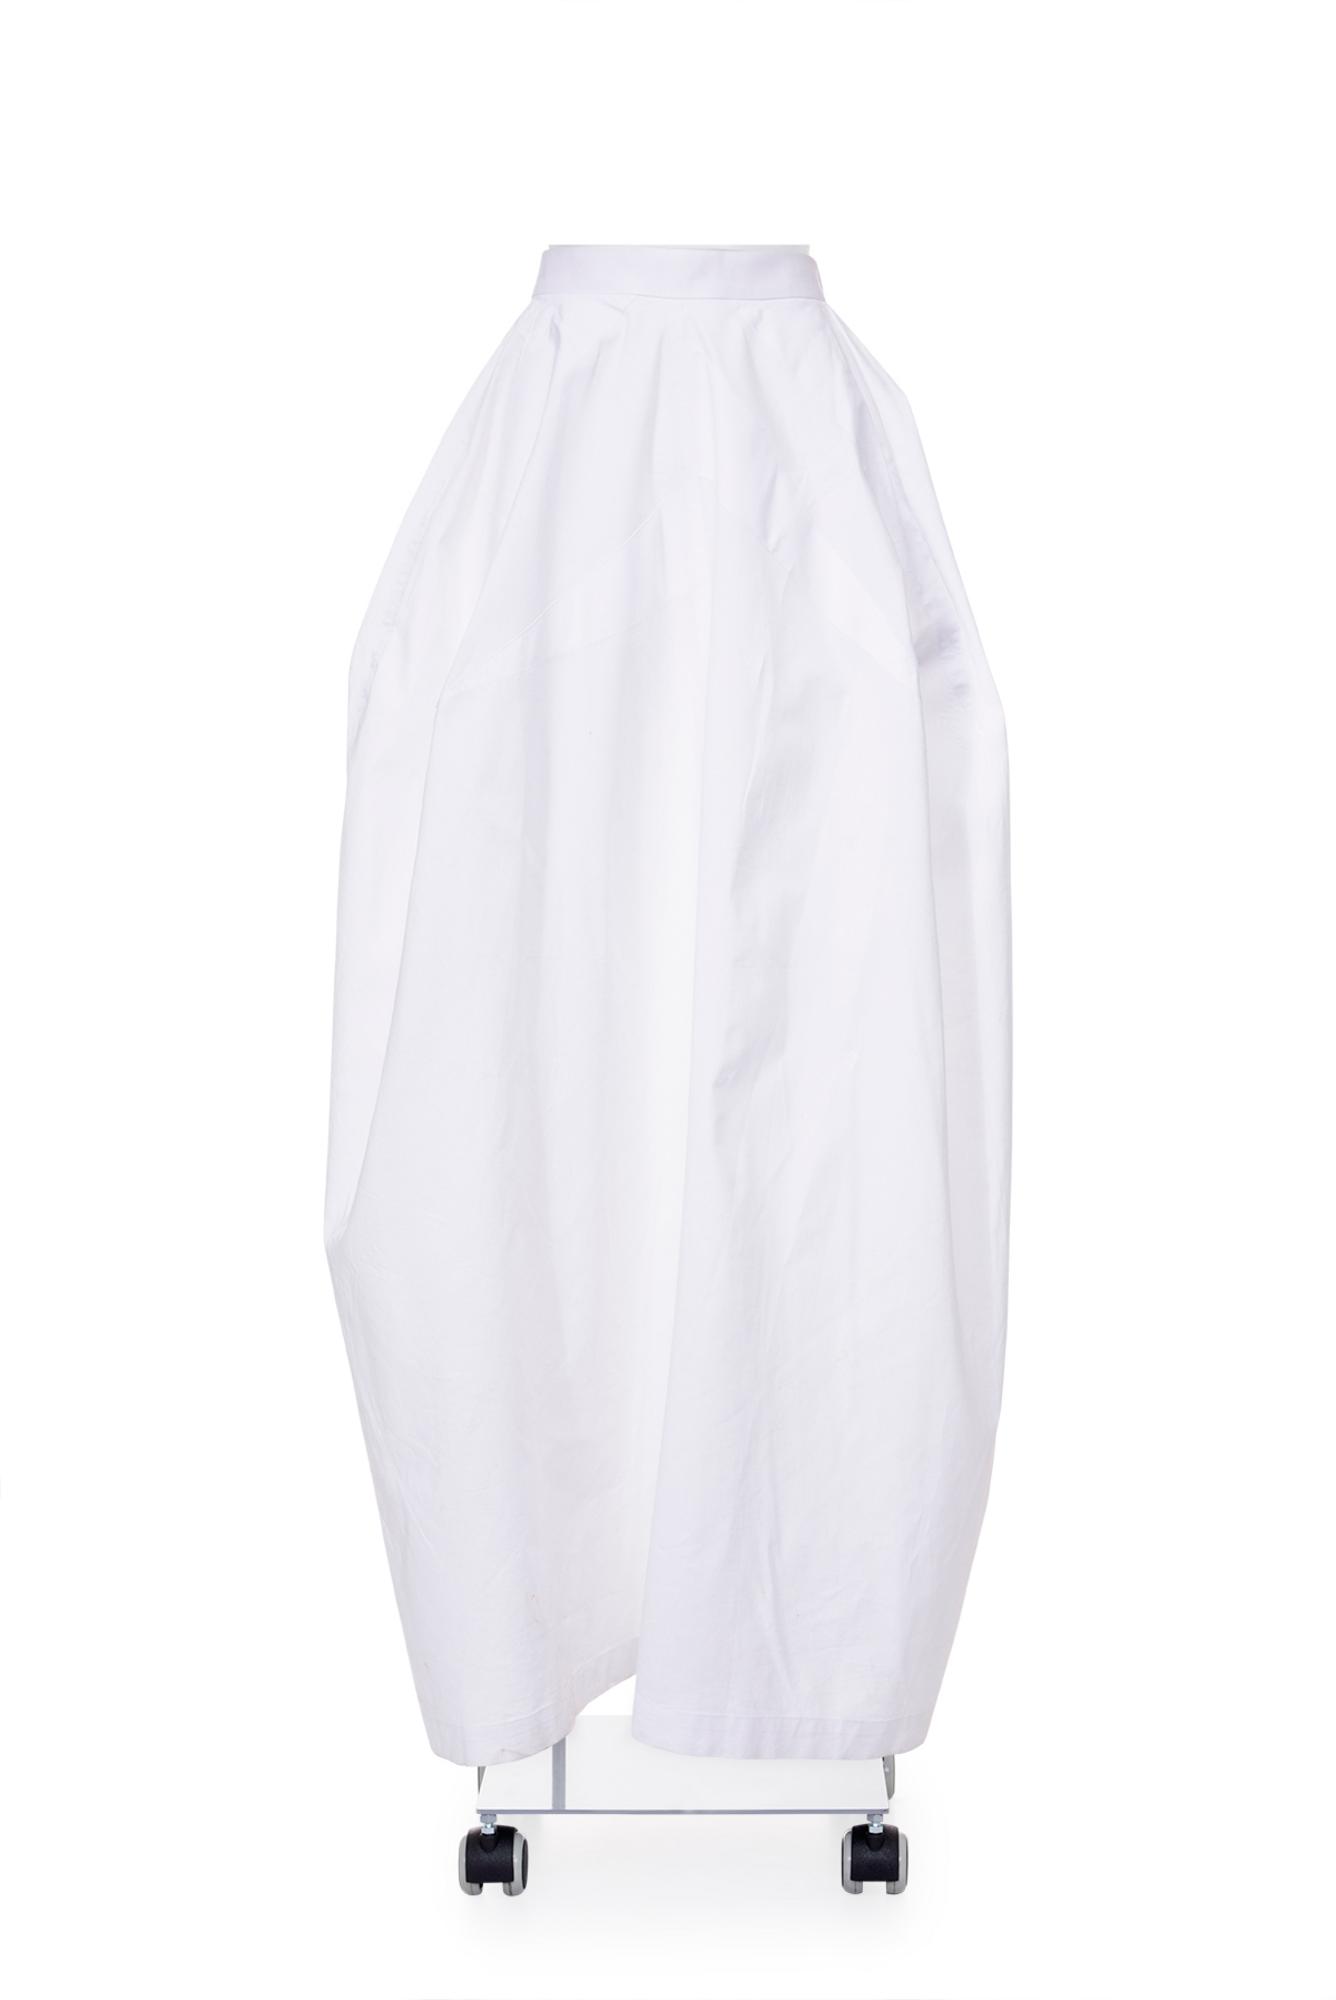 YOHJI YAMAMOTO High waist long balloon skirt DESCRIPTION: High waist white...